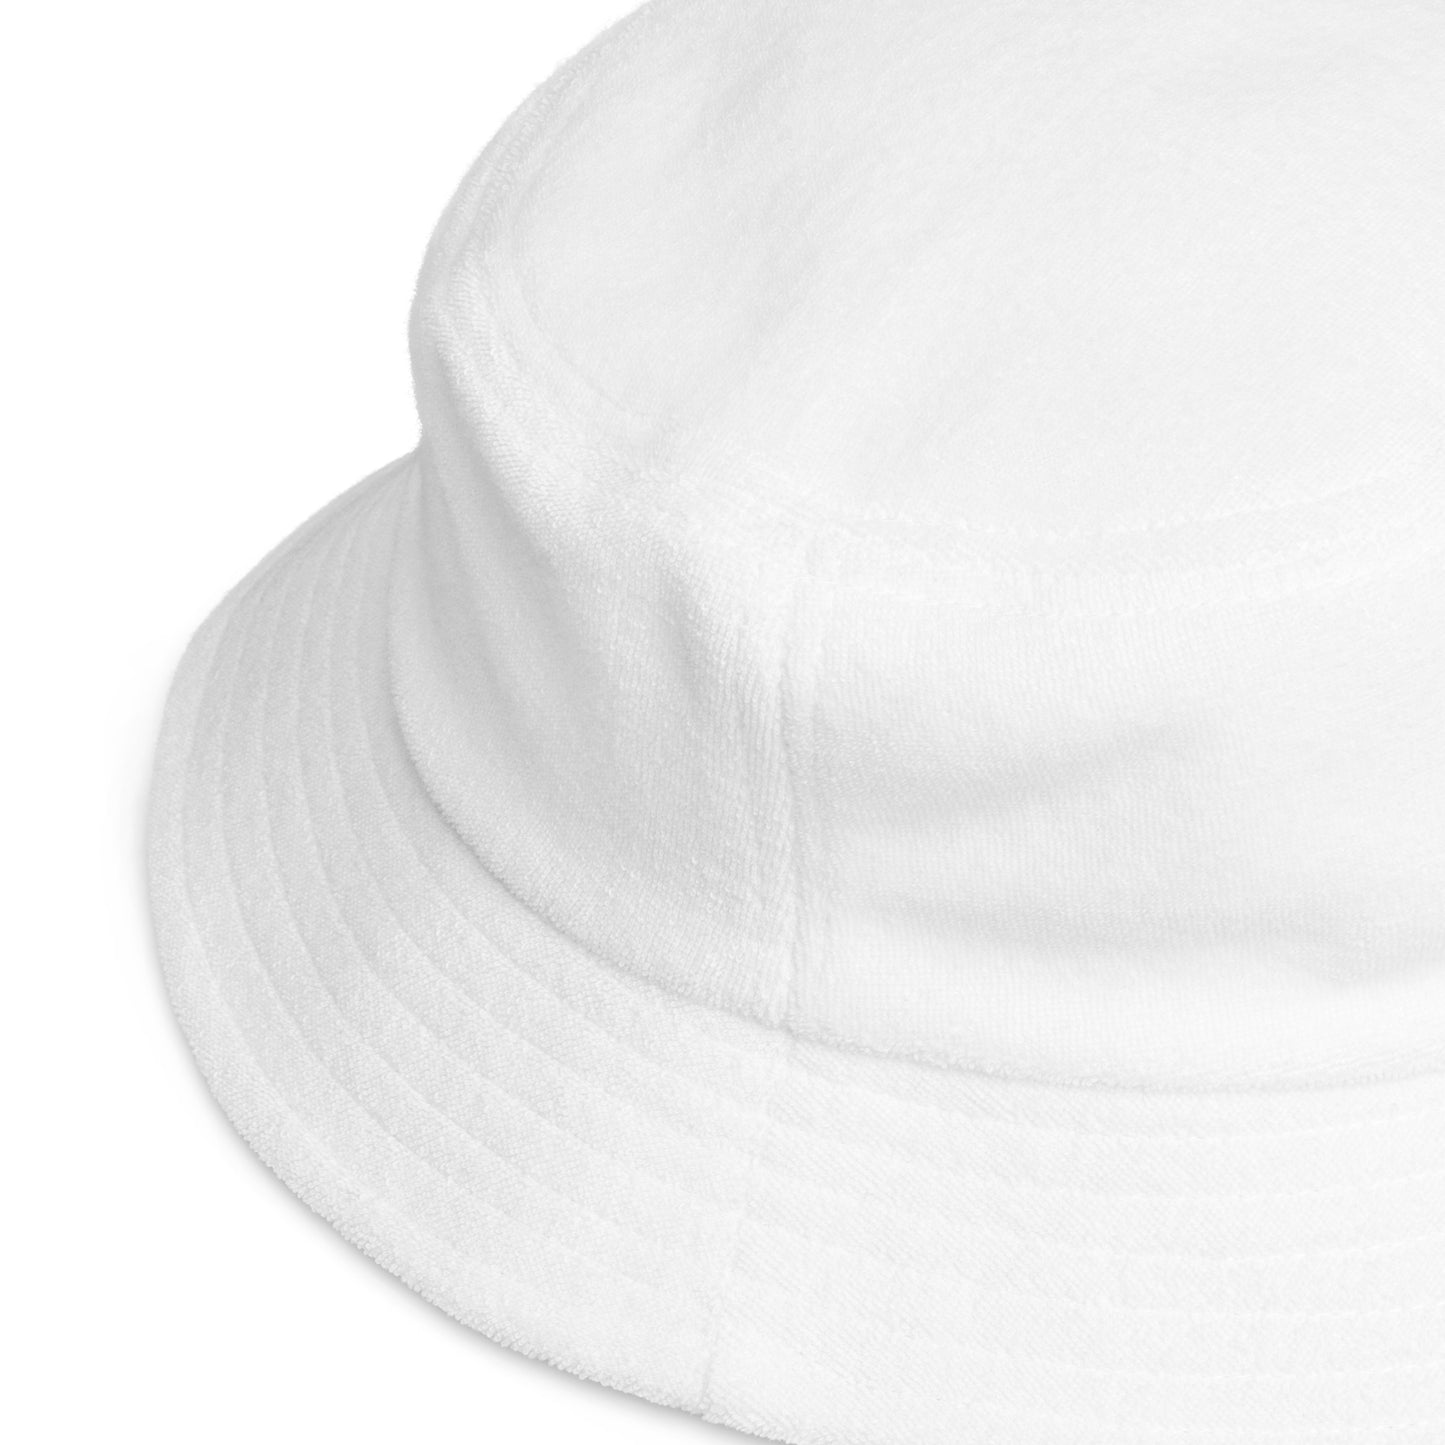 Faith Bucket Hat